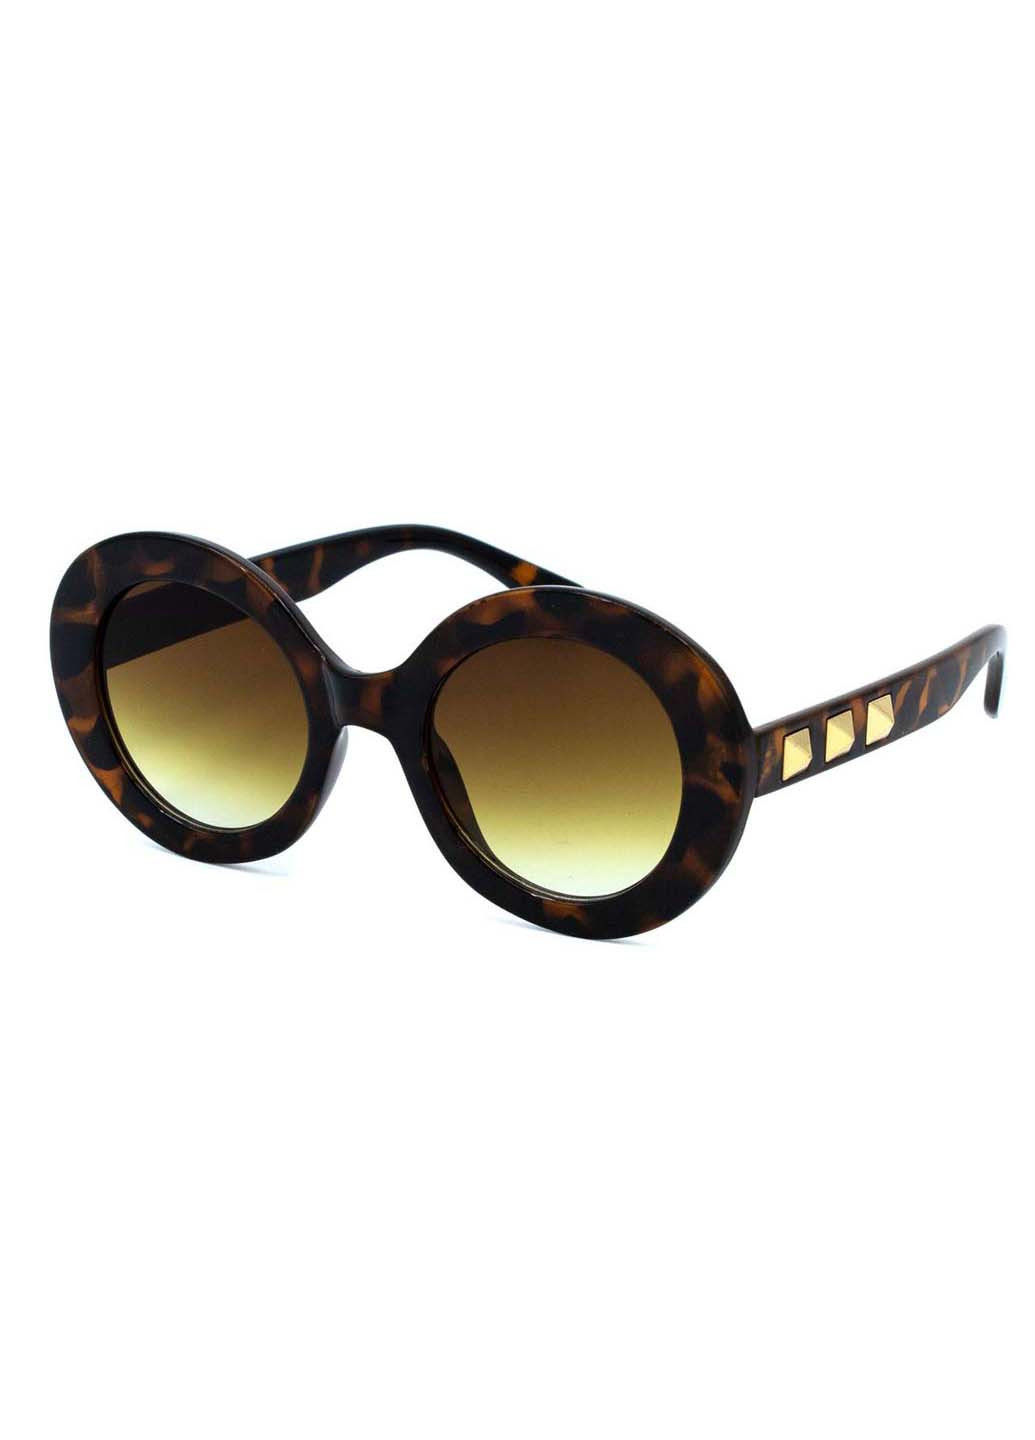 Солнцезащитные очки Sumwin комбинированные